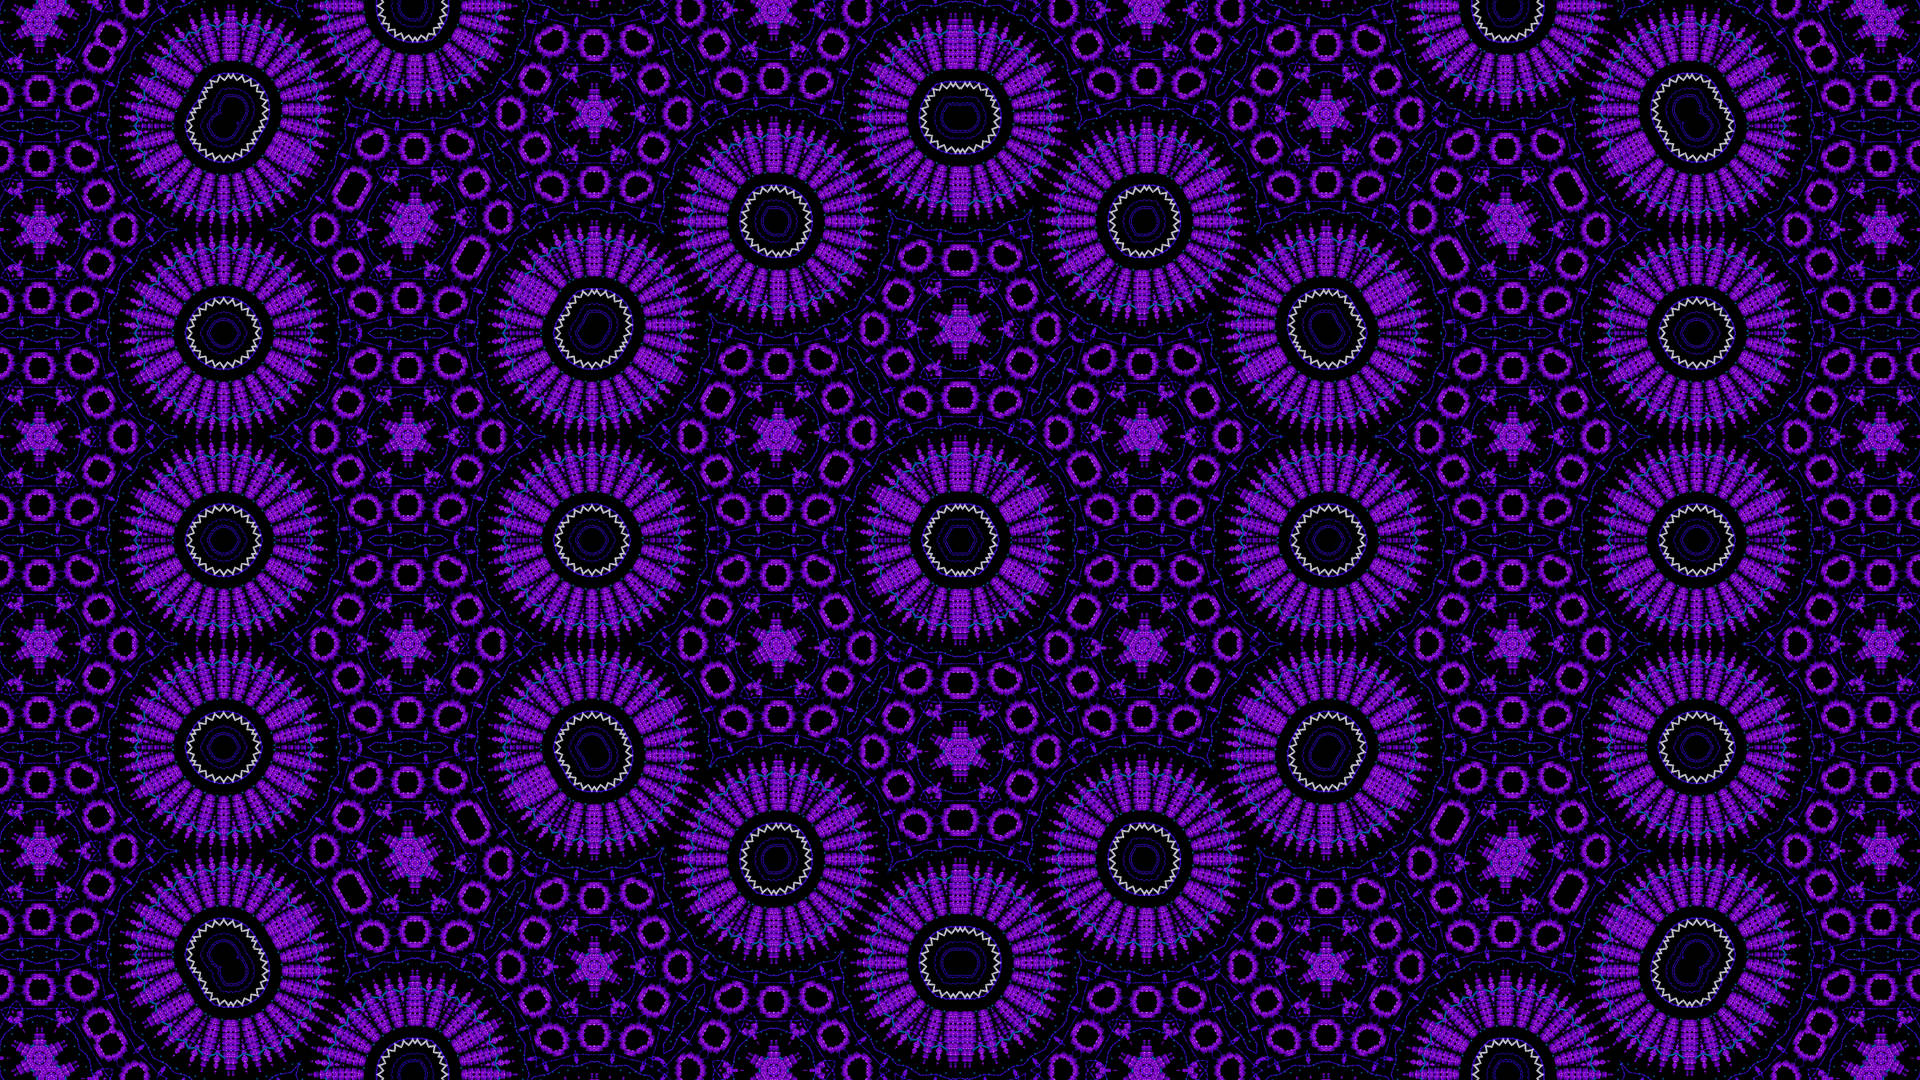 Kaleidoscope-like Art 4k Purple